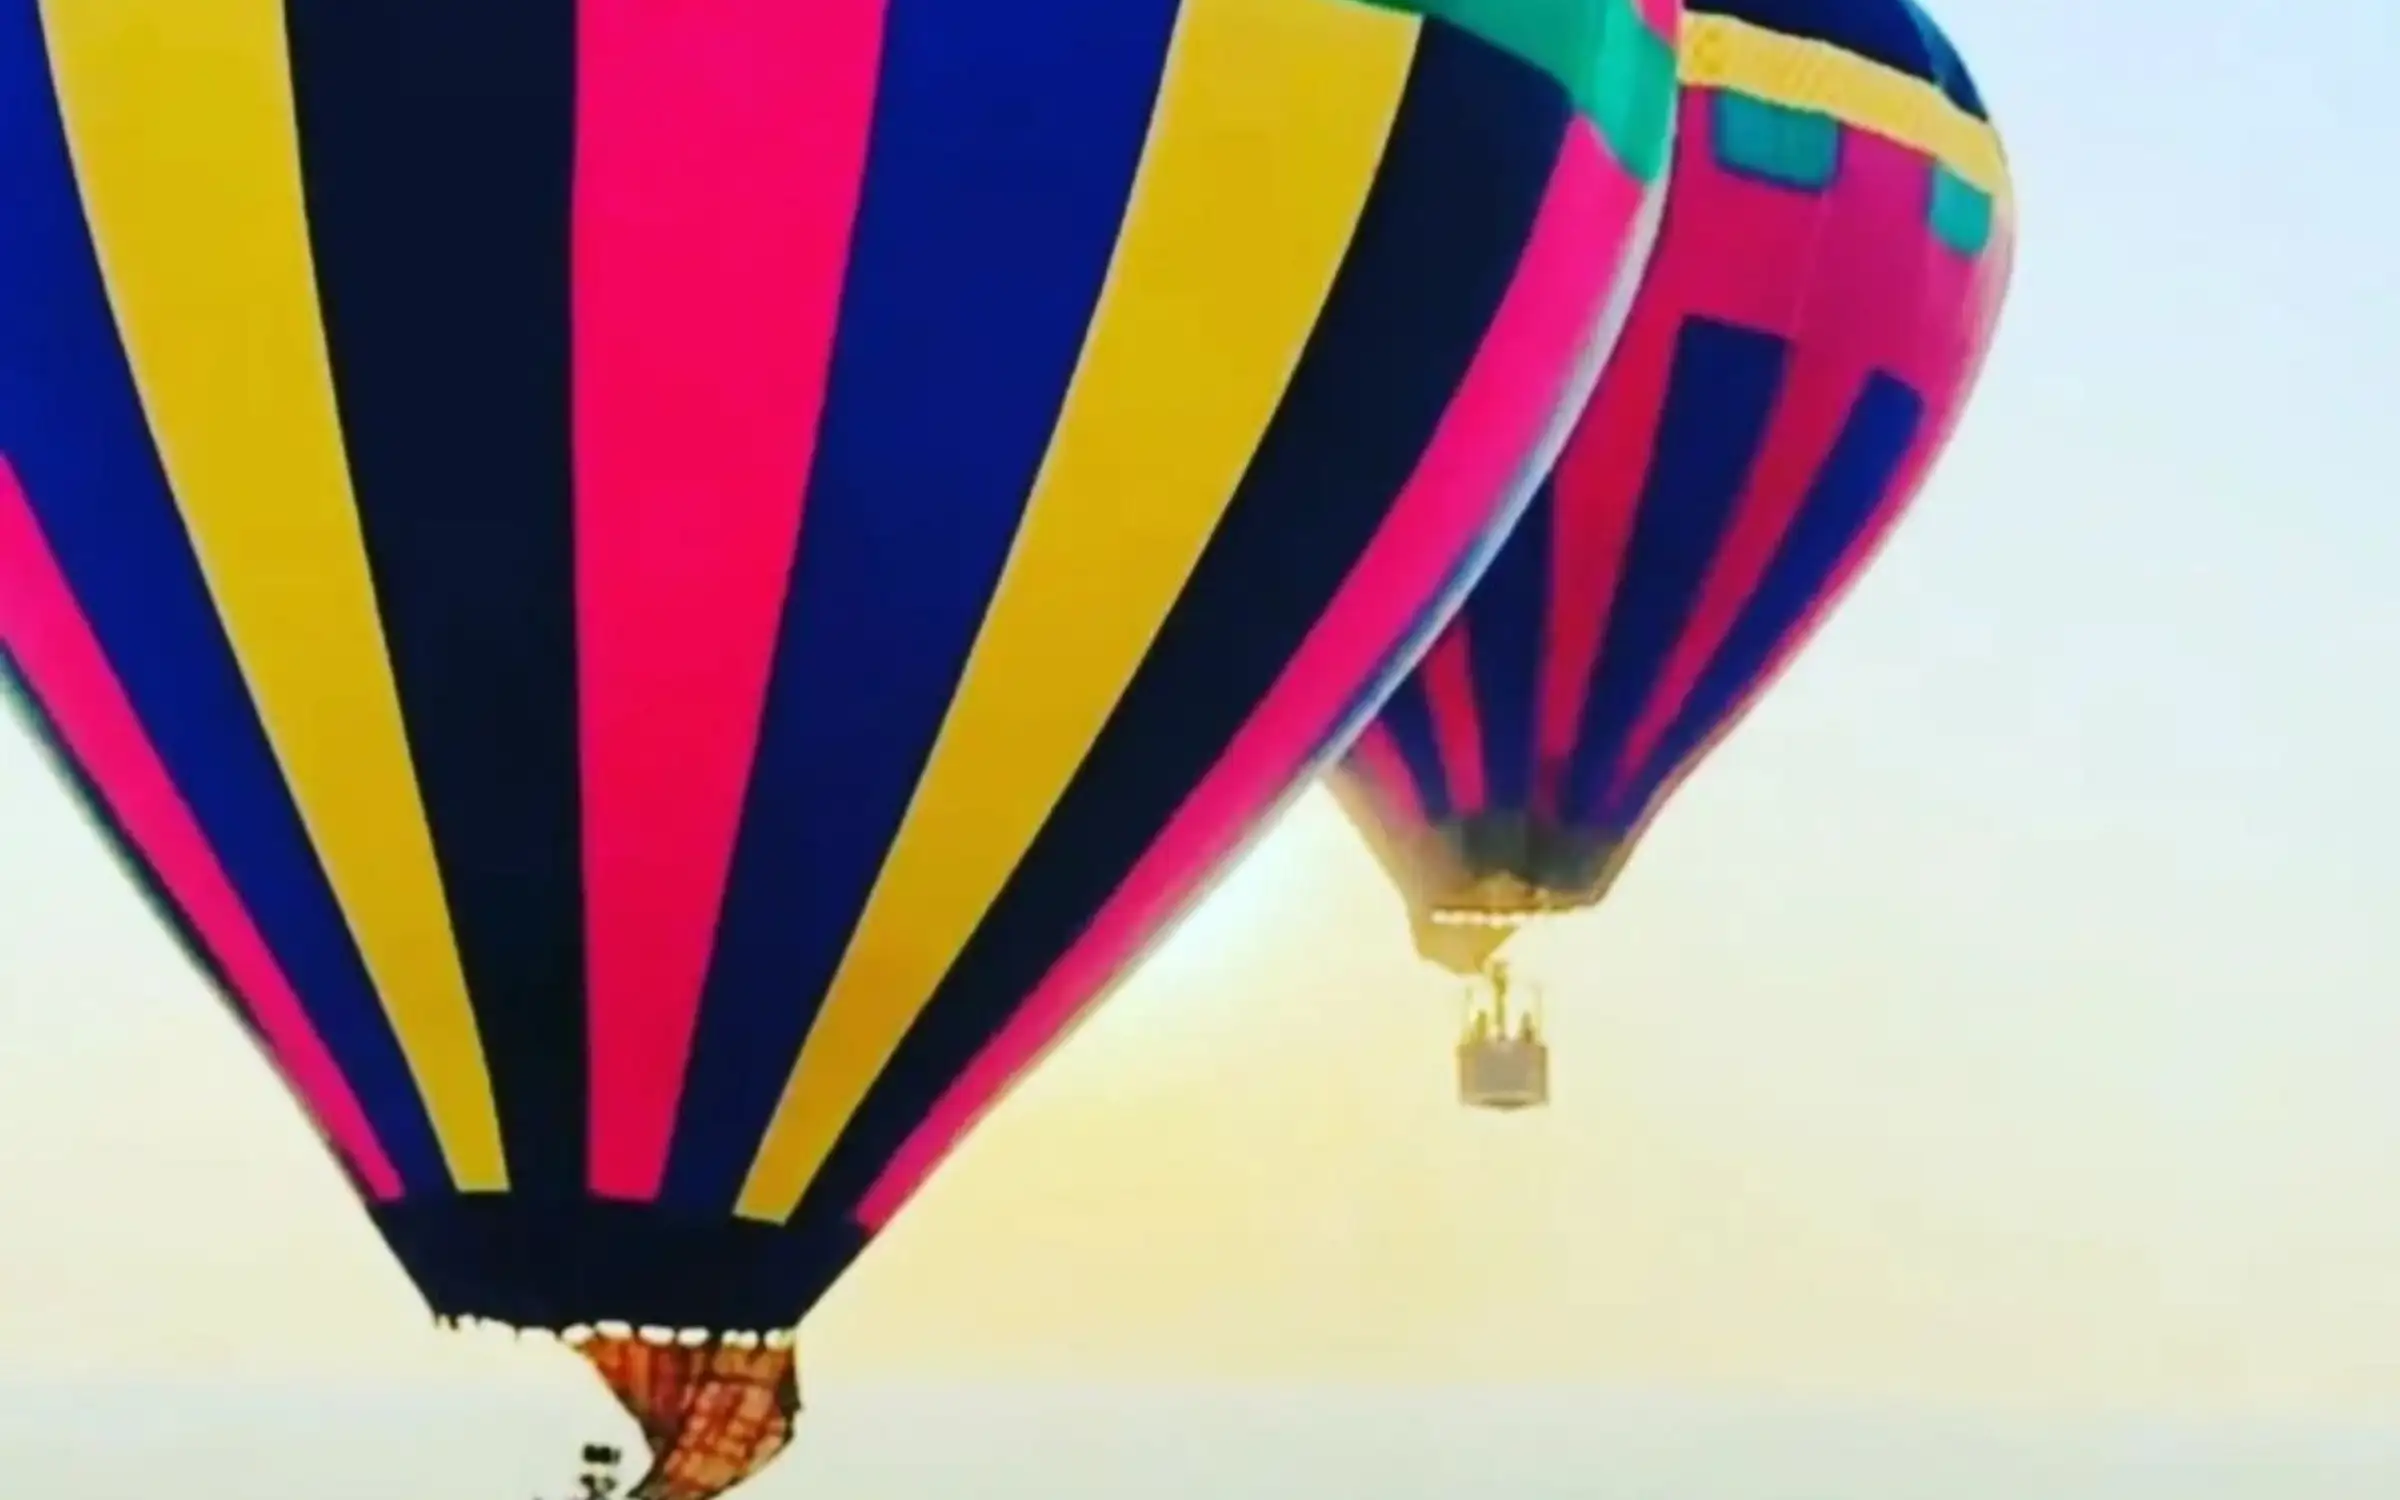 Hot air Balloon in Nagpur